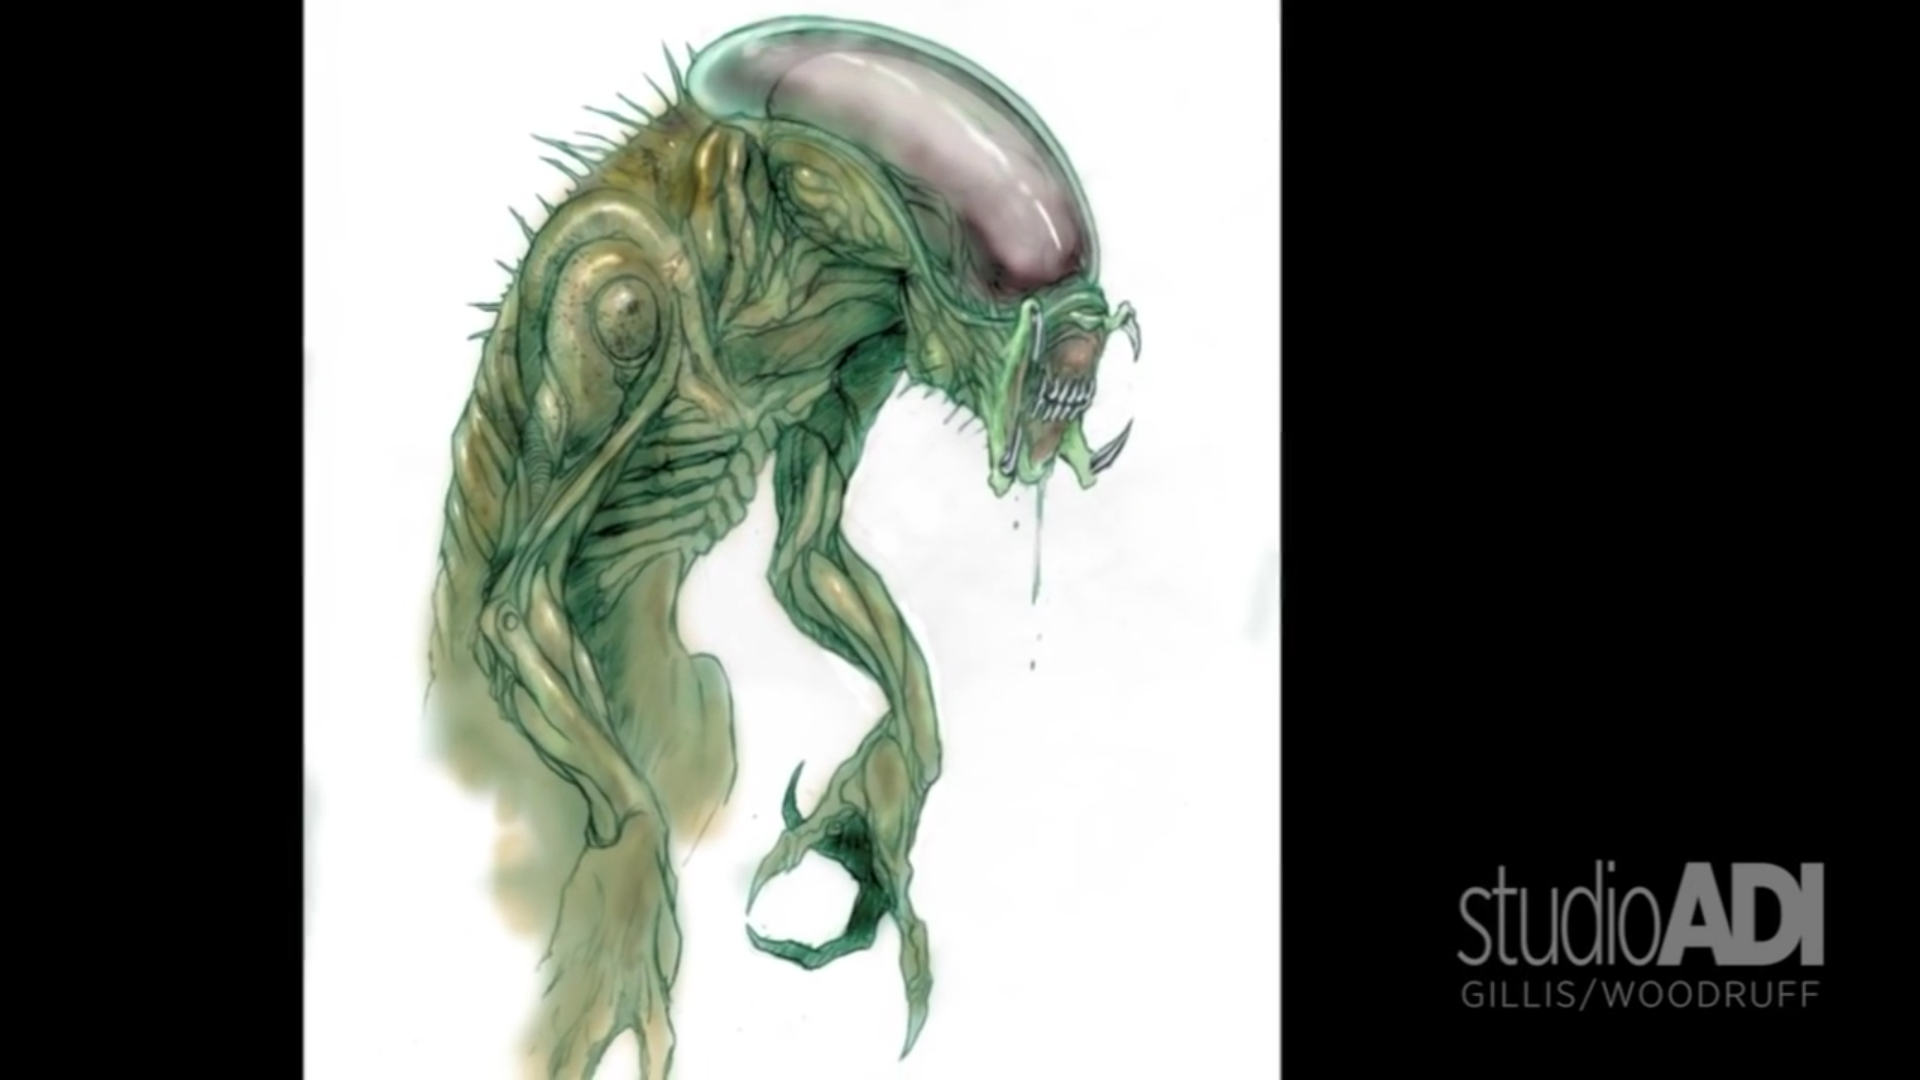 AVP: Alien vs. Predator – Design Studio Press